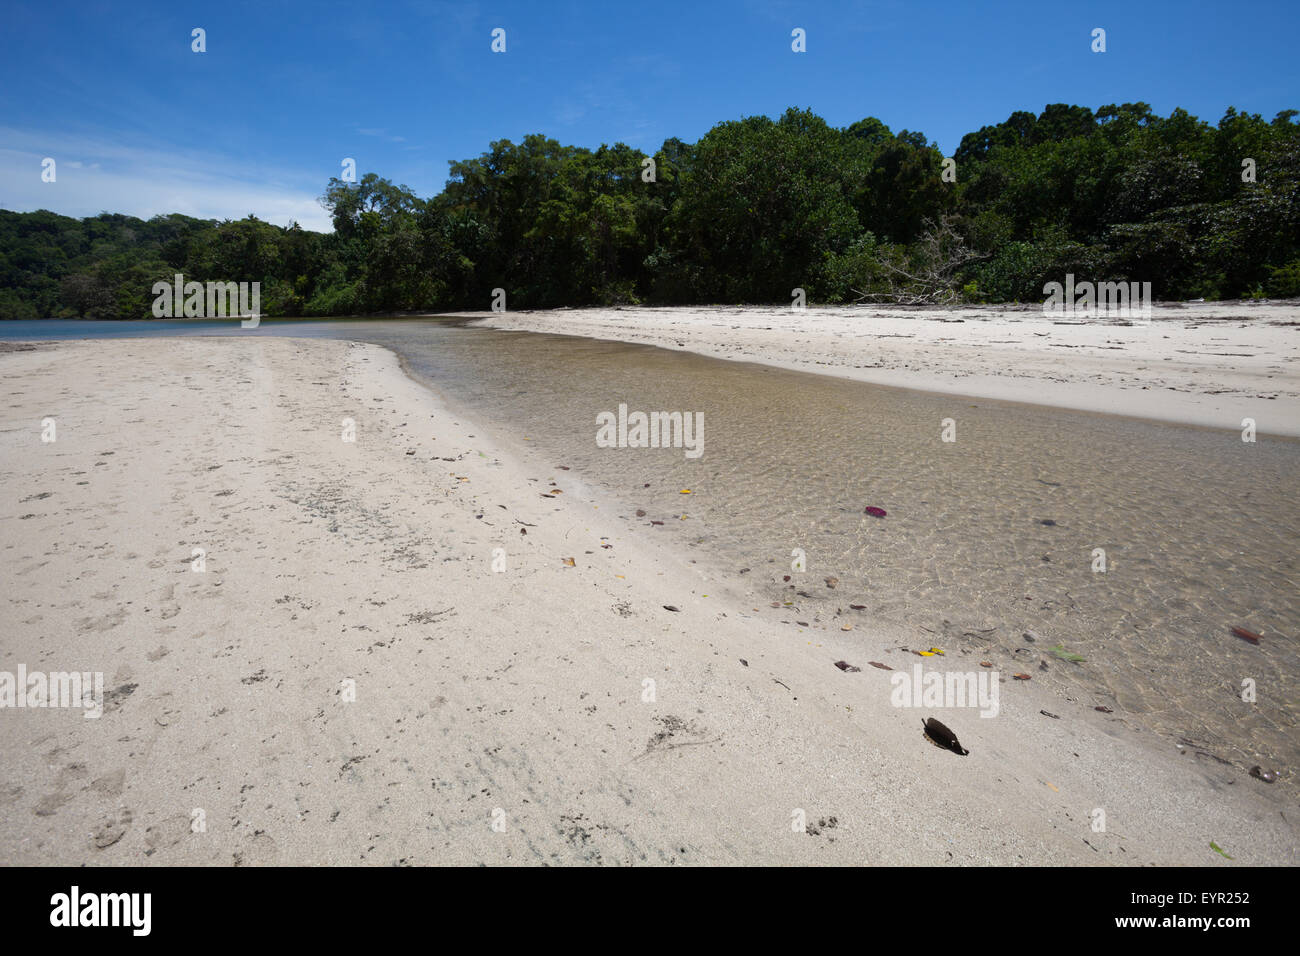 Sabbia bianca e ruscelli di acqua dolce sulla spiaggia in un estuario a Sancang, sulla costa meridionale dell'isola di Java, Indonesia. Foto Stock